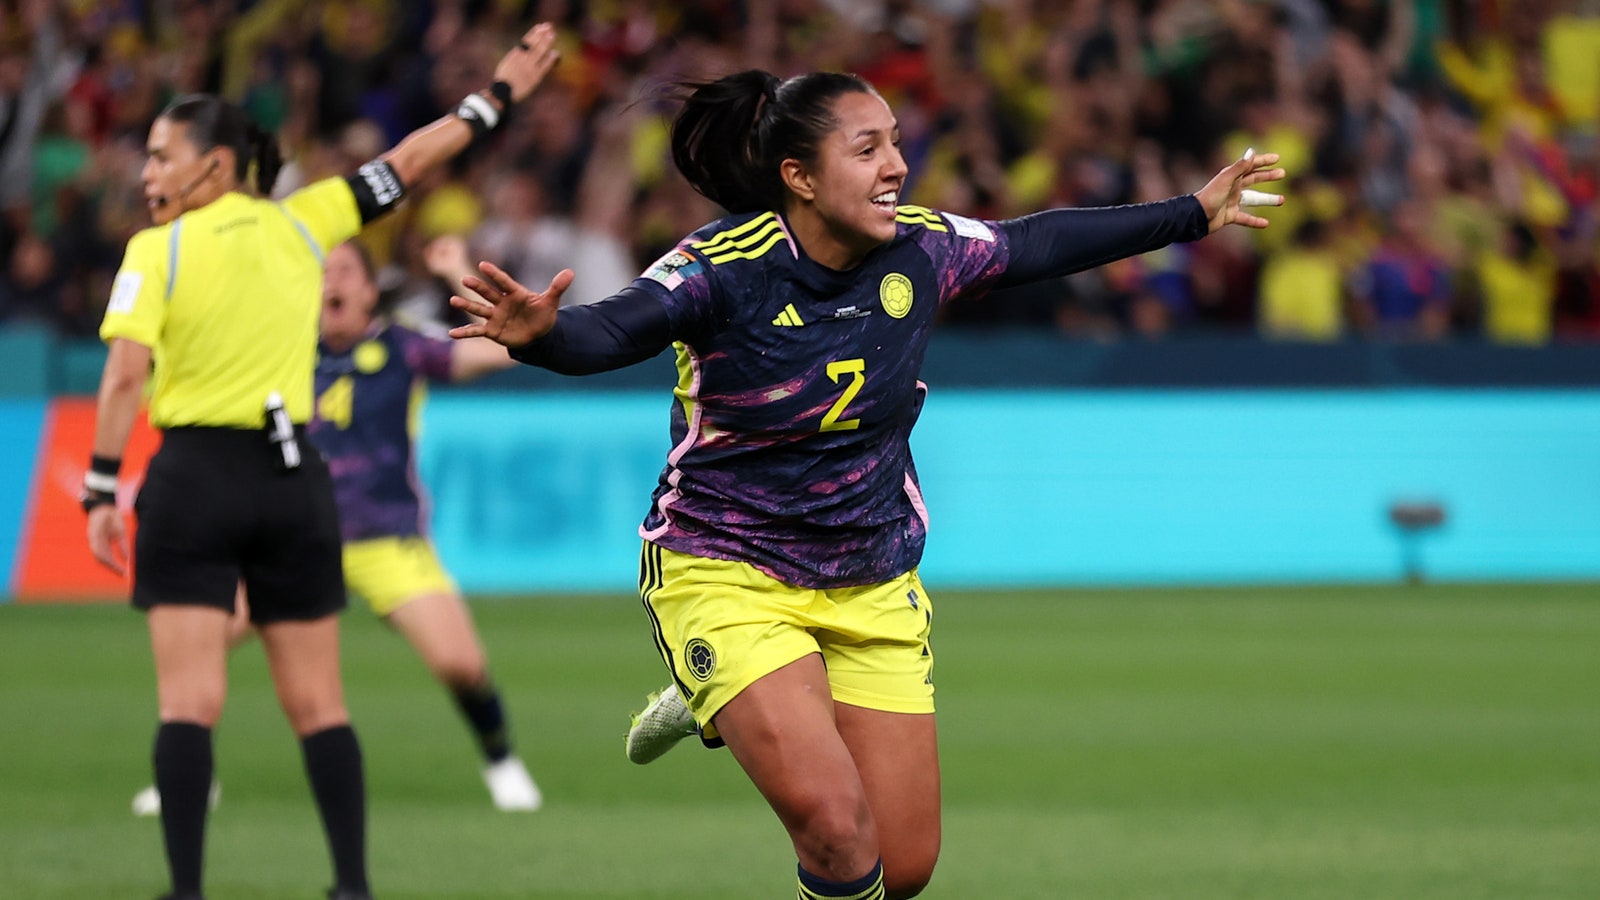 Colombia's Manuela Vanegas scores goal vs. Germany in 90+7'